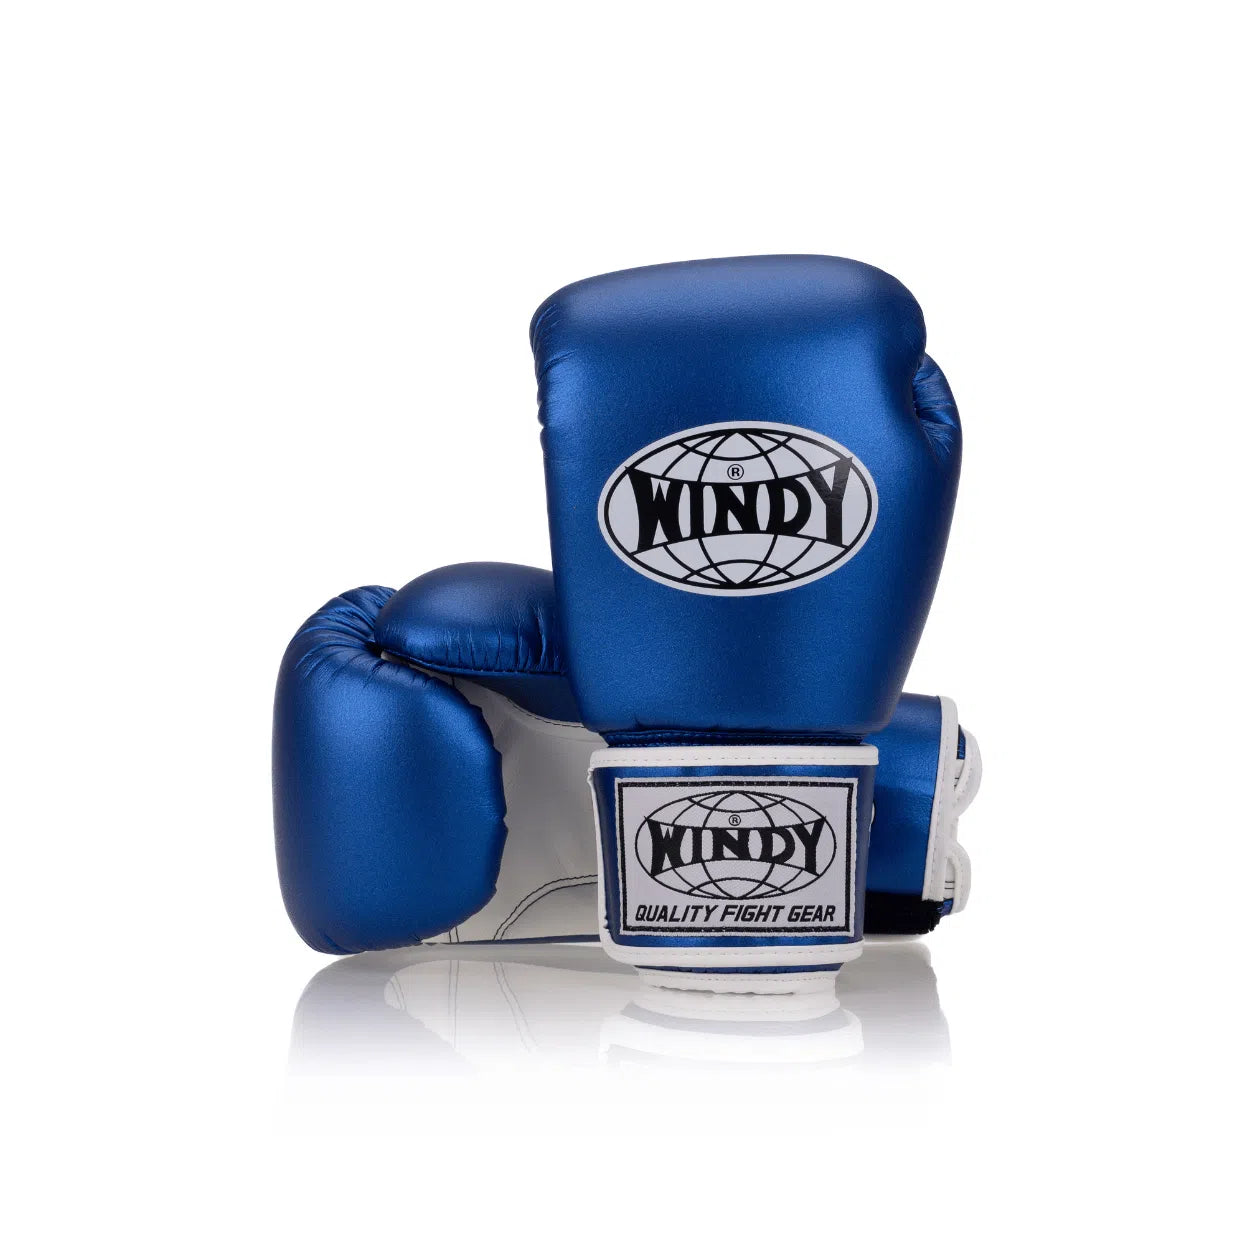 Classic Microfiber Boxing Glove - Blue